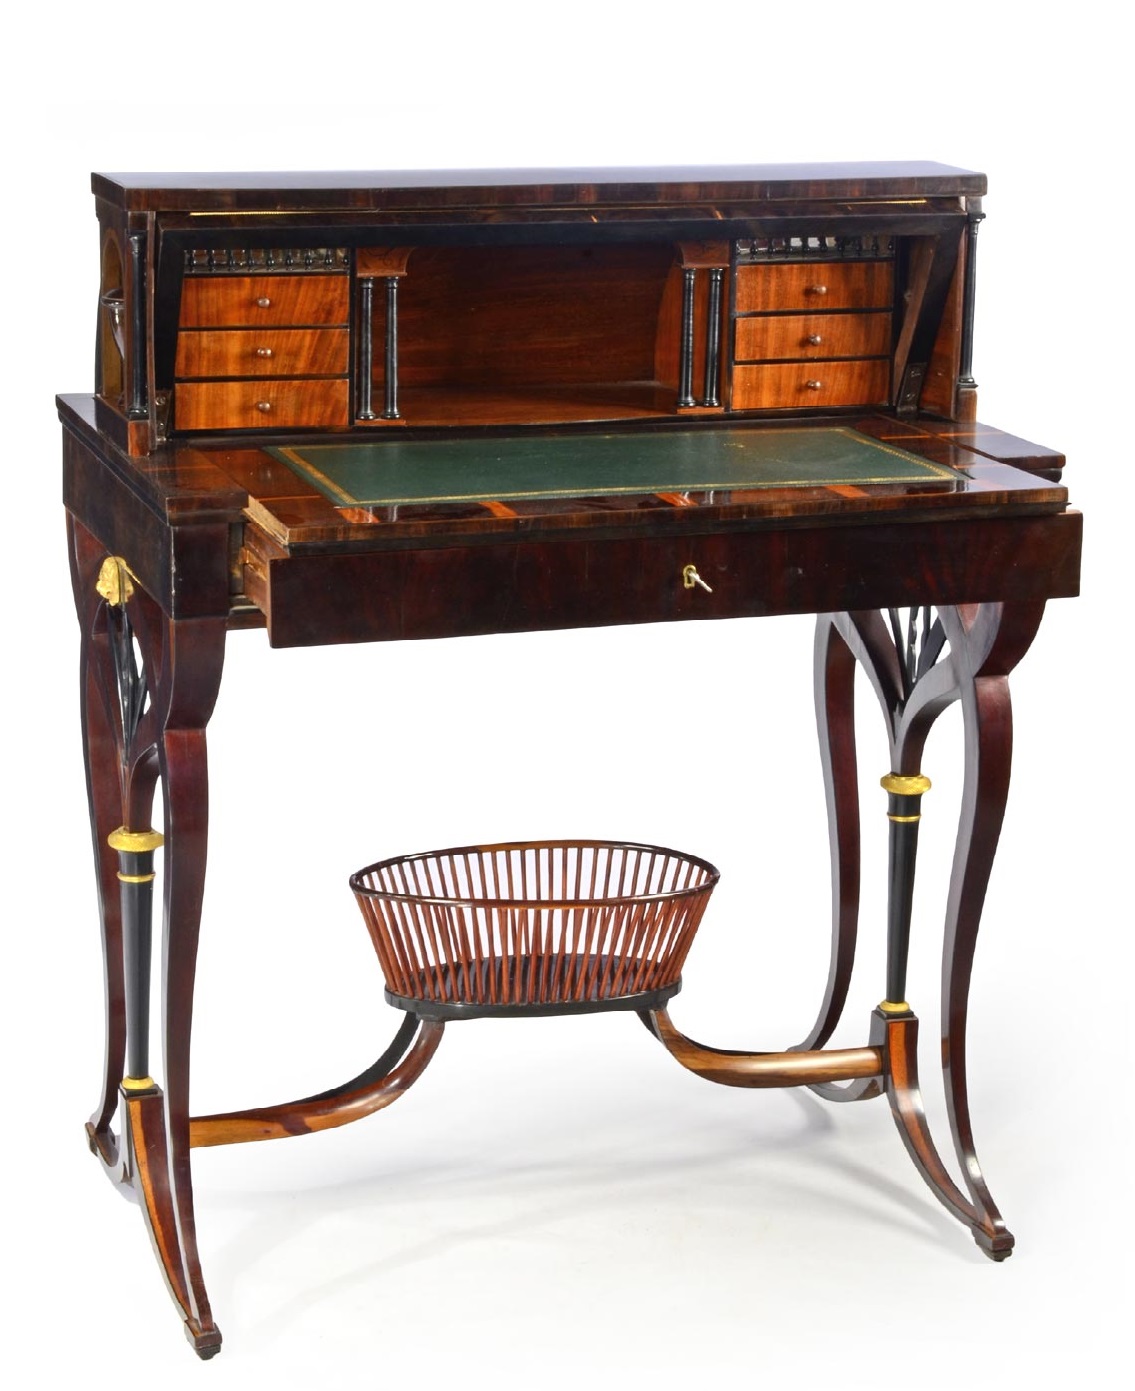 Johann Reimann: Stůl / 1803 dýhované dřevo / 97 cm cena: 1 121 000 Kč / Zezula 12. 4. 2014